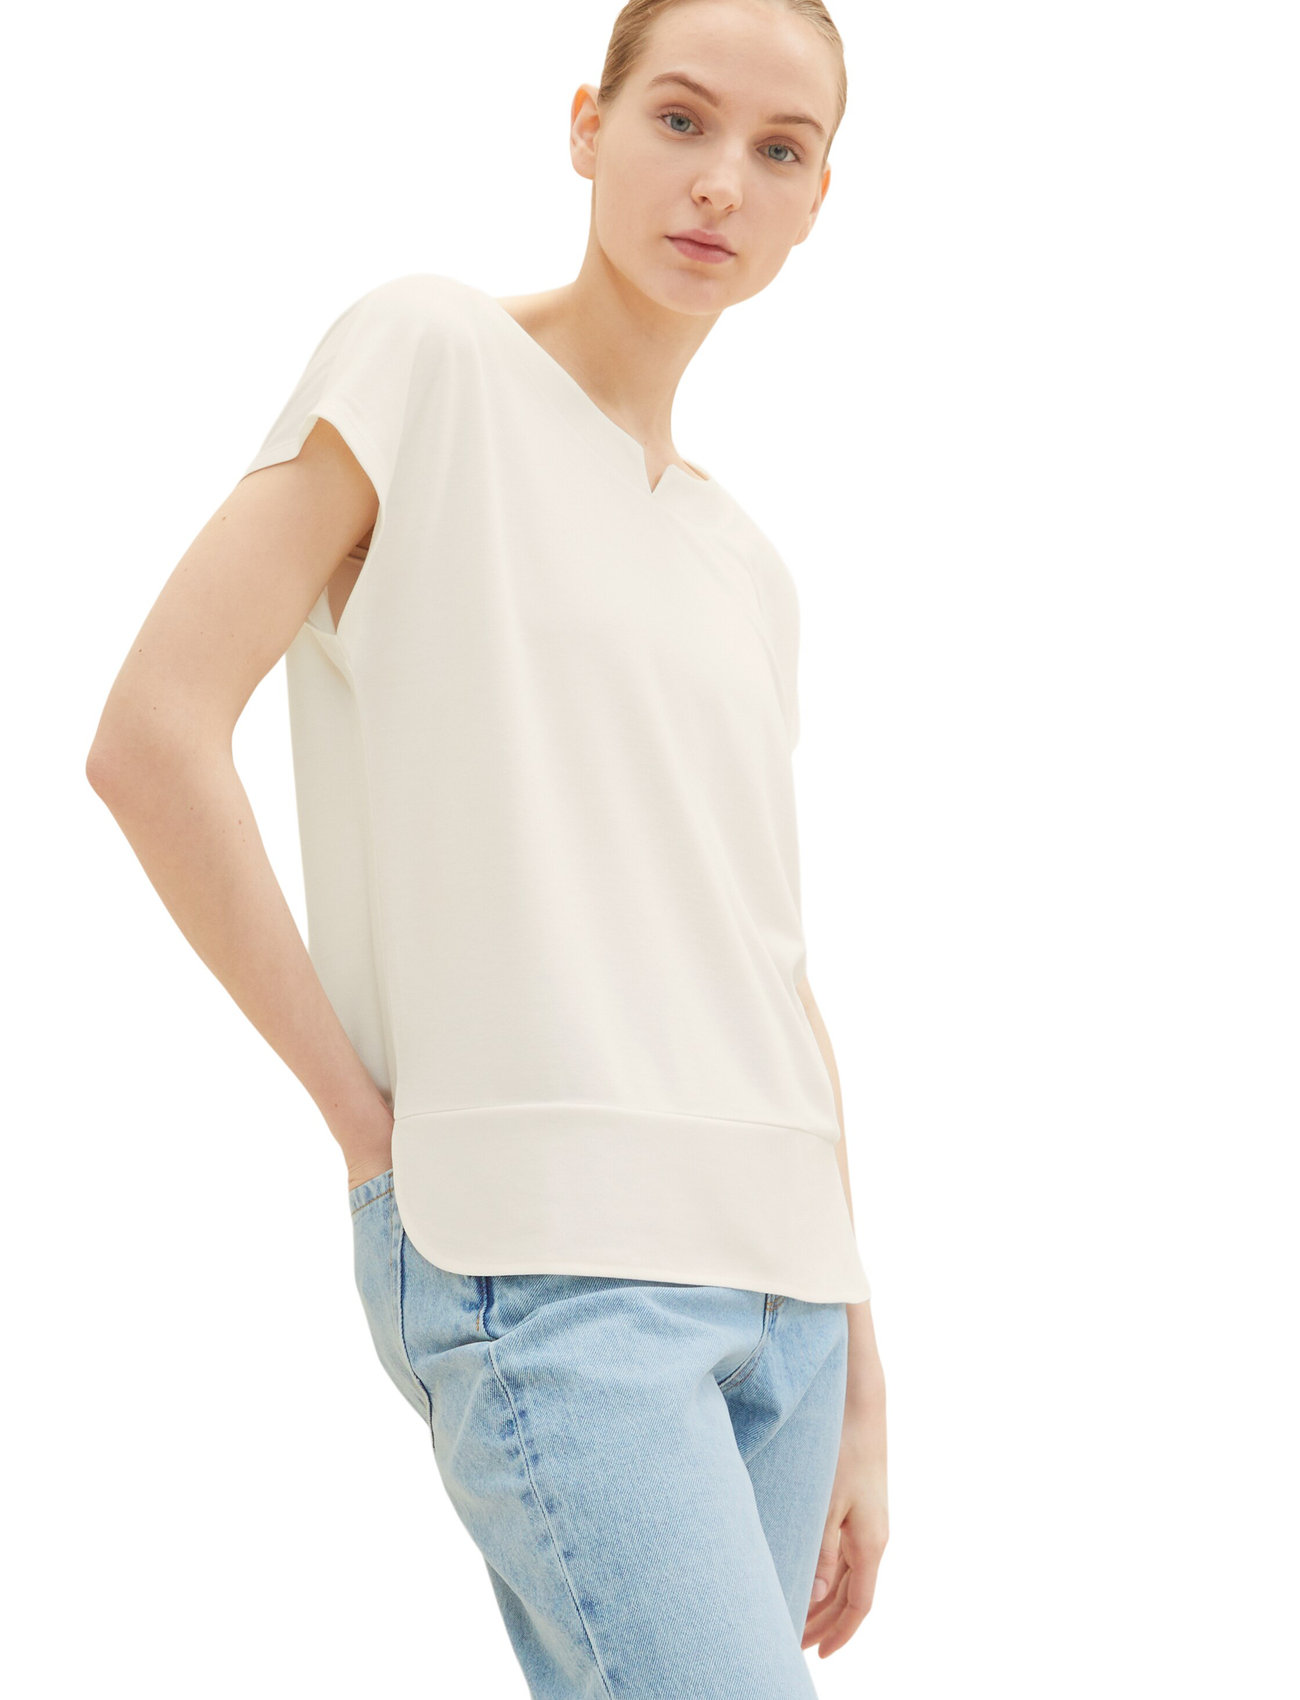 Tom Tailor - T-shirt fabric mix - laveste priser - whisper white - 1